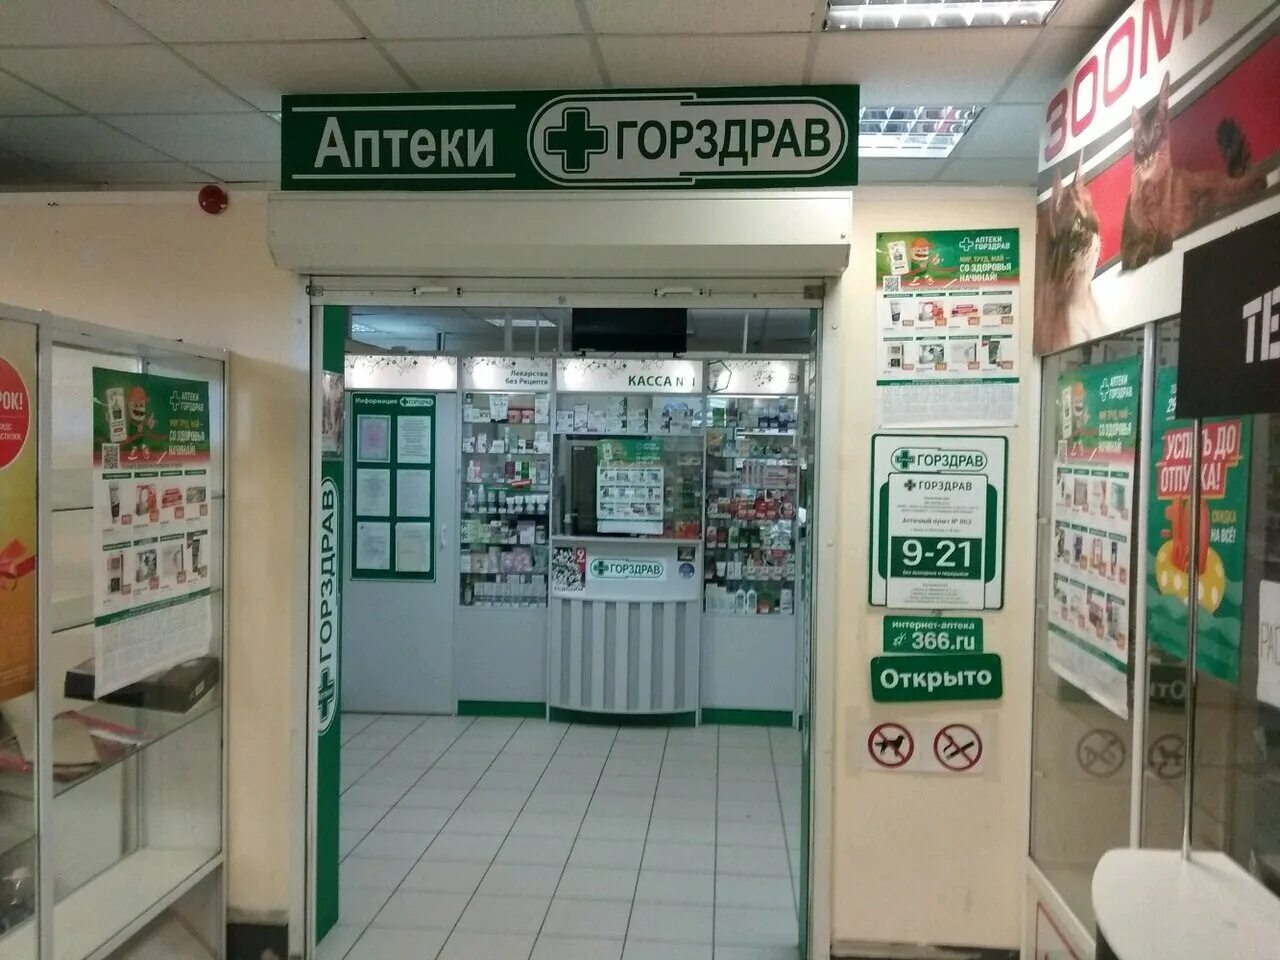 Аптека ГОРЗДРАВ Электросталь. Аптеки ГОРЗДРАВ Домодедово. ГОРЗДРАВ аптека Новогиреево. ГОРЗДРАВ аптека Воронеж.